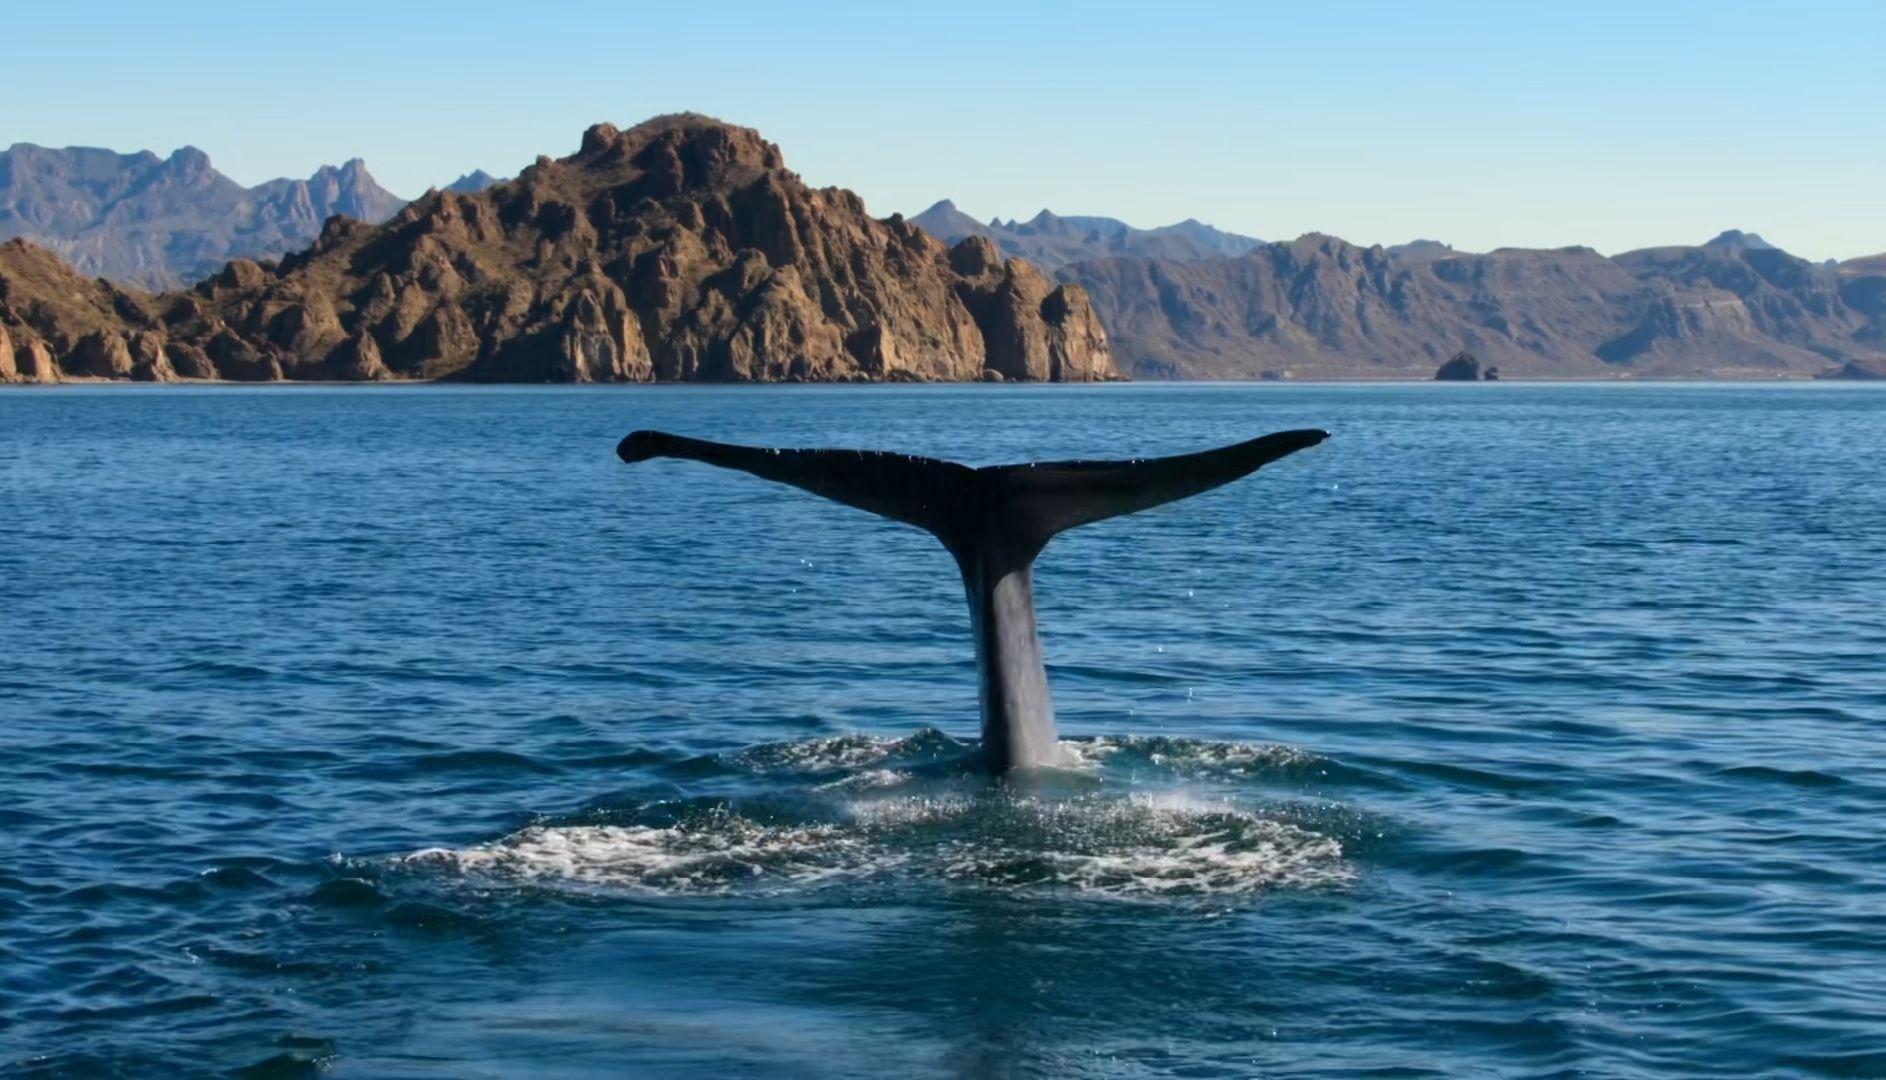 有蓝色鲸鱼的手机壁纸吗